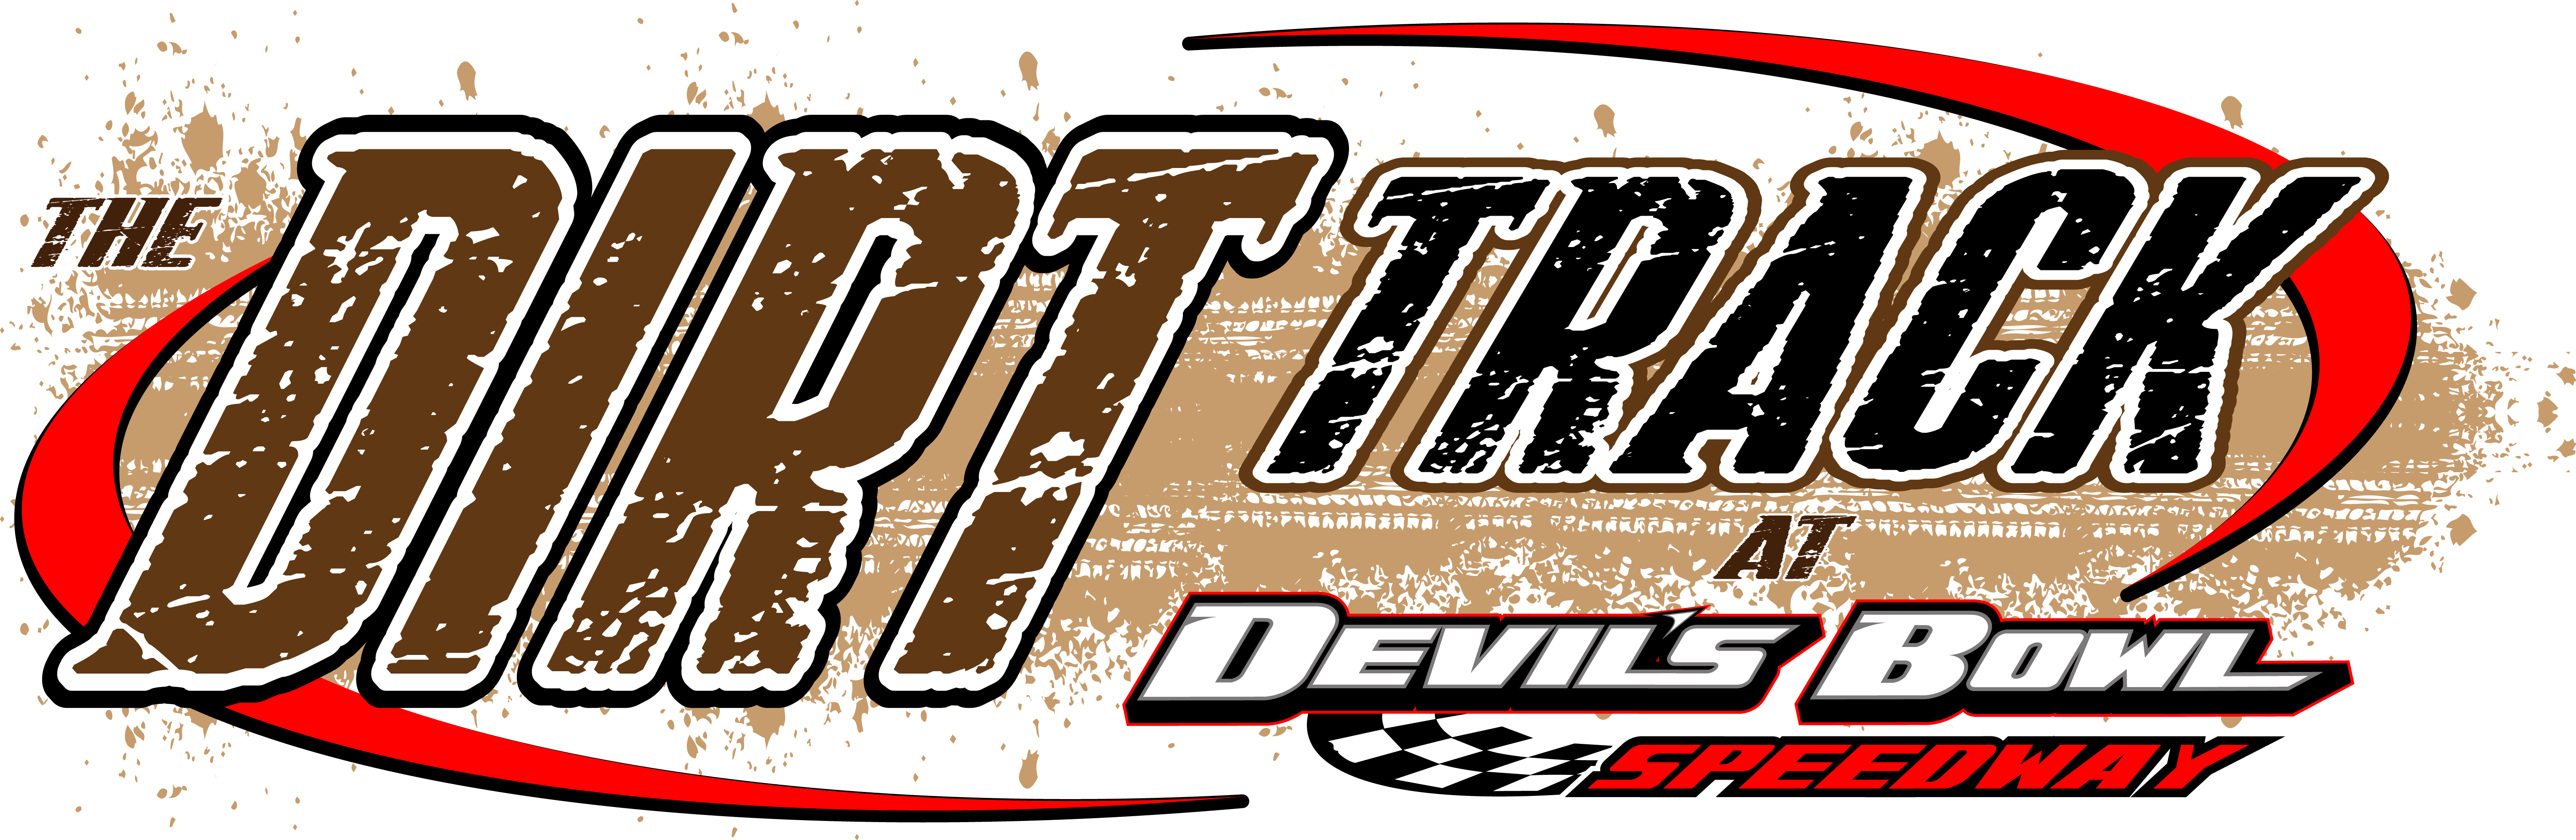 2017 Schedules Devil's Bowl Speedway